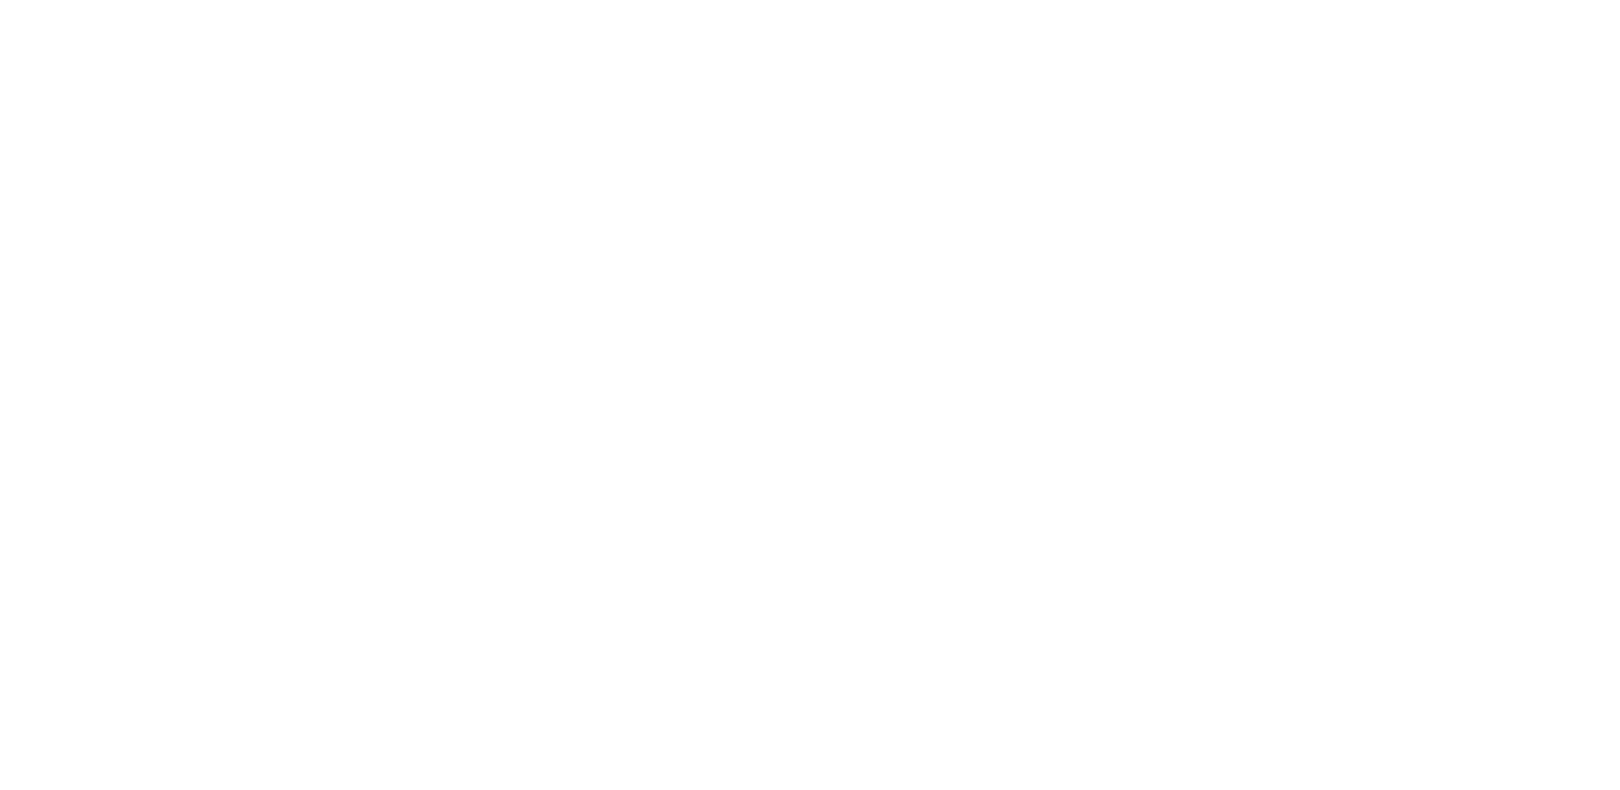 Reed200-v2 challenge!<